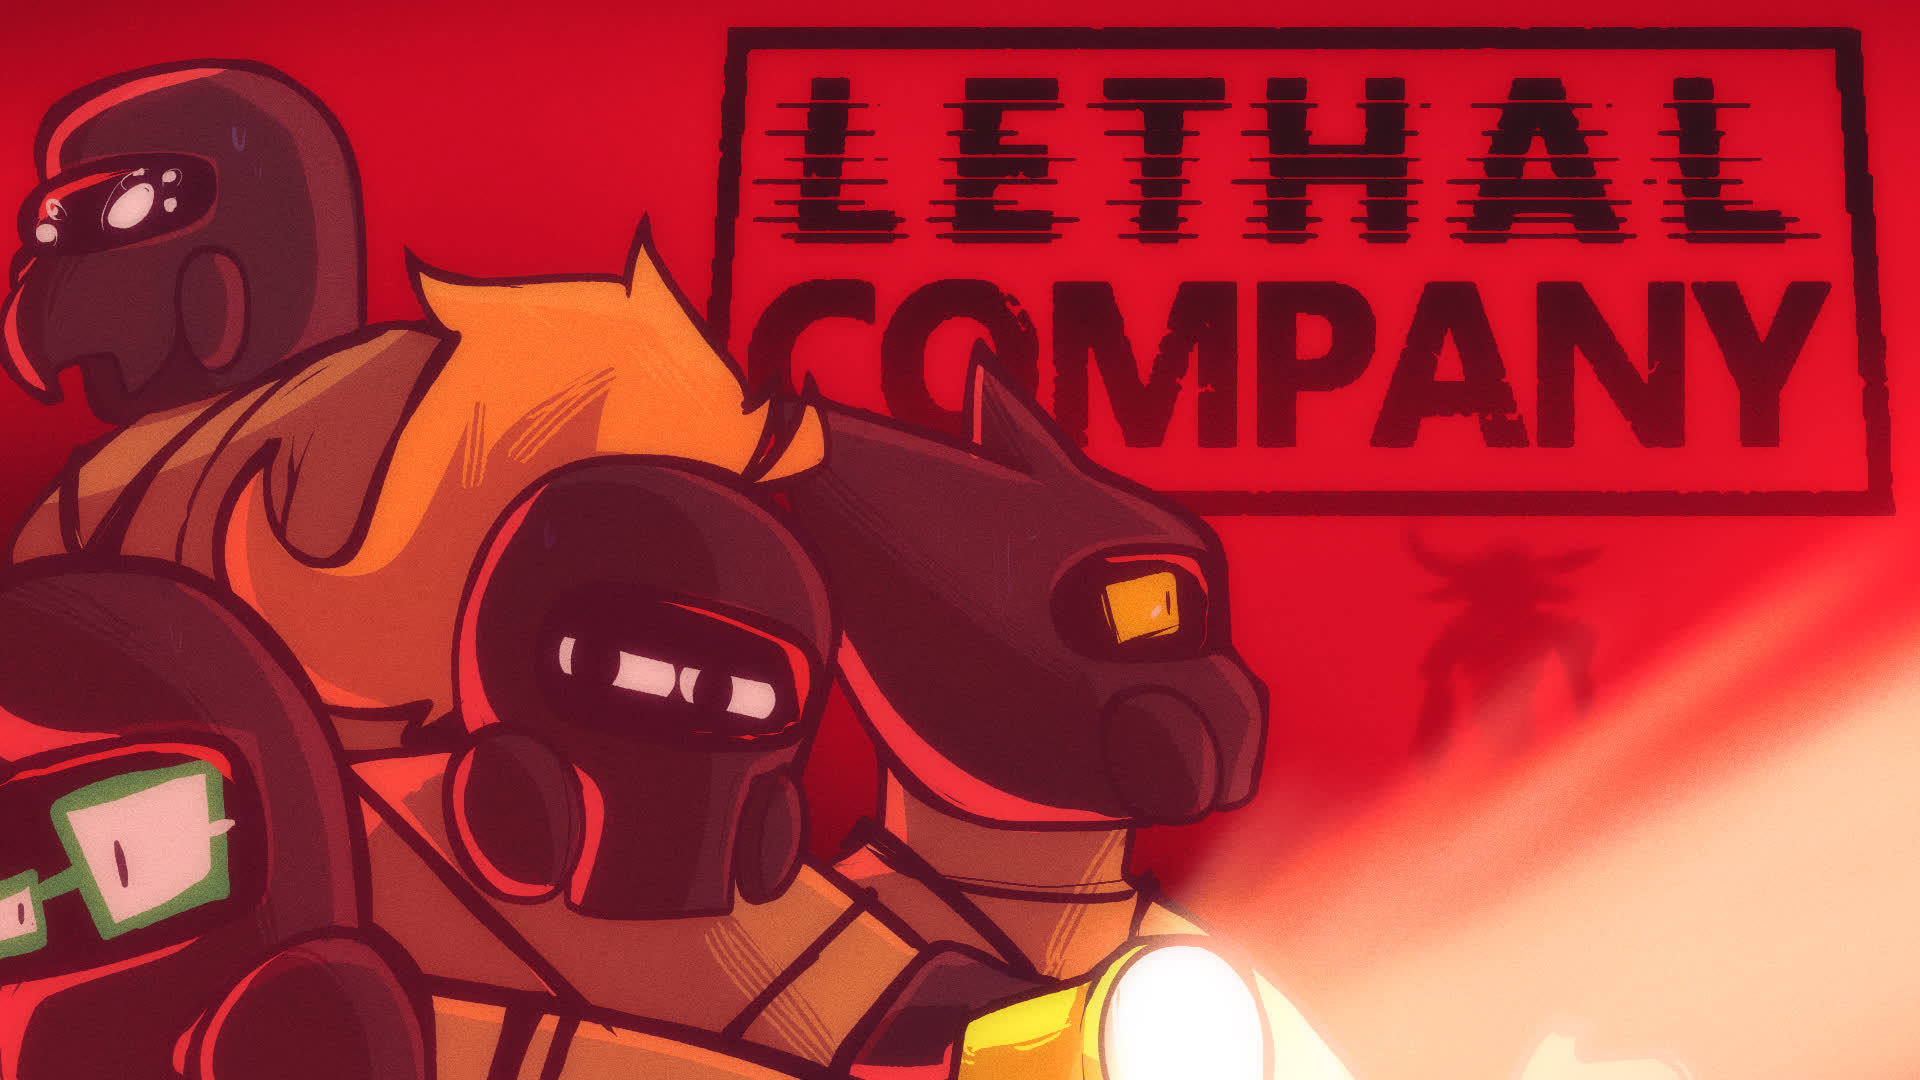 Читы и трейнеры для Lethal Company — как скачать, где найти?